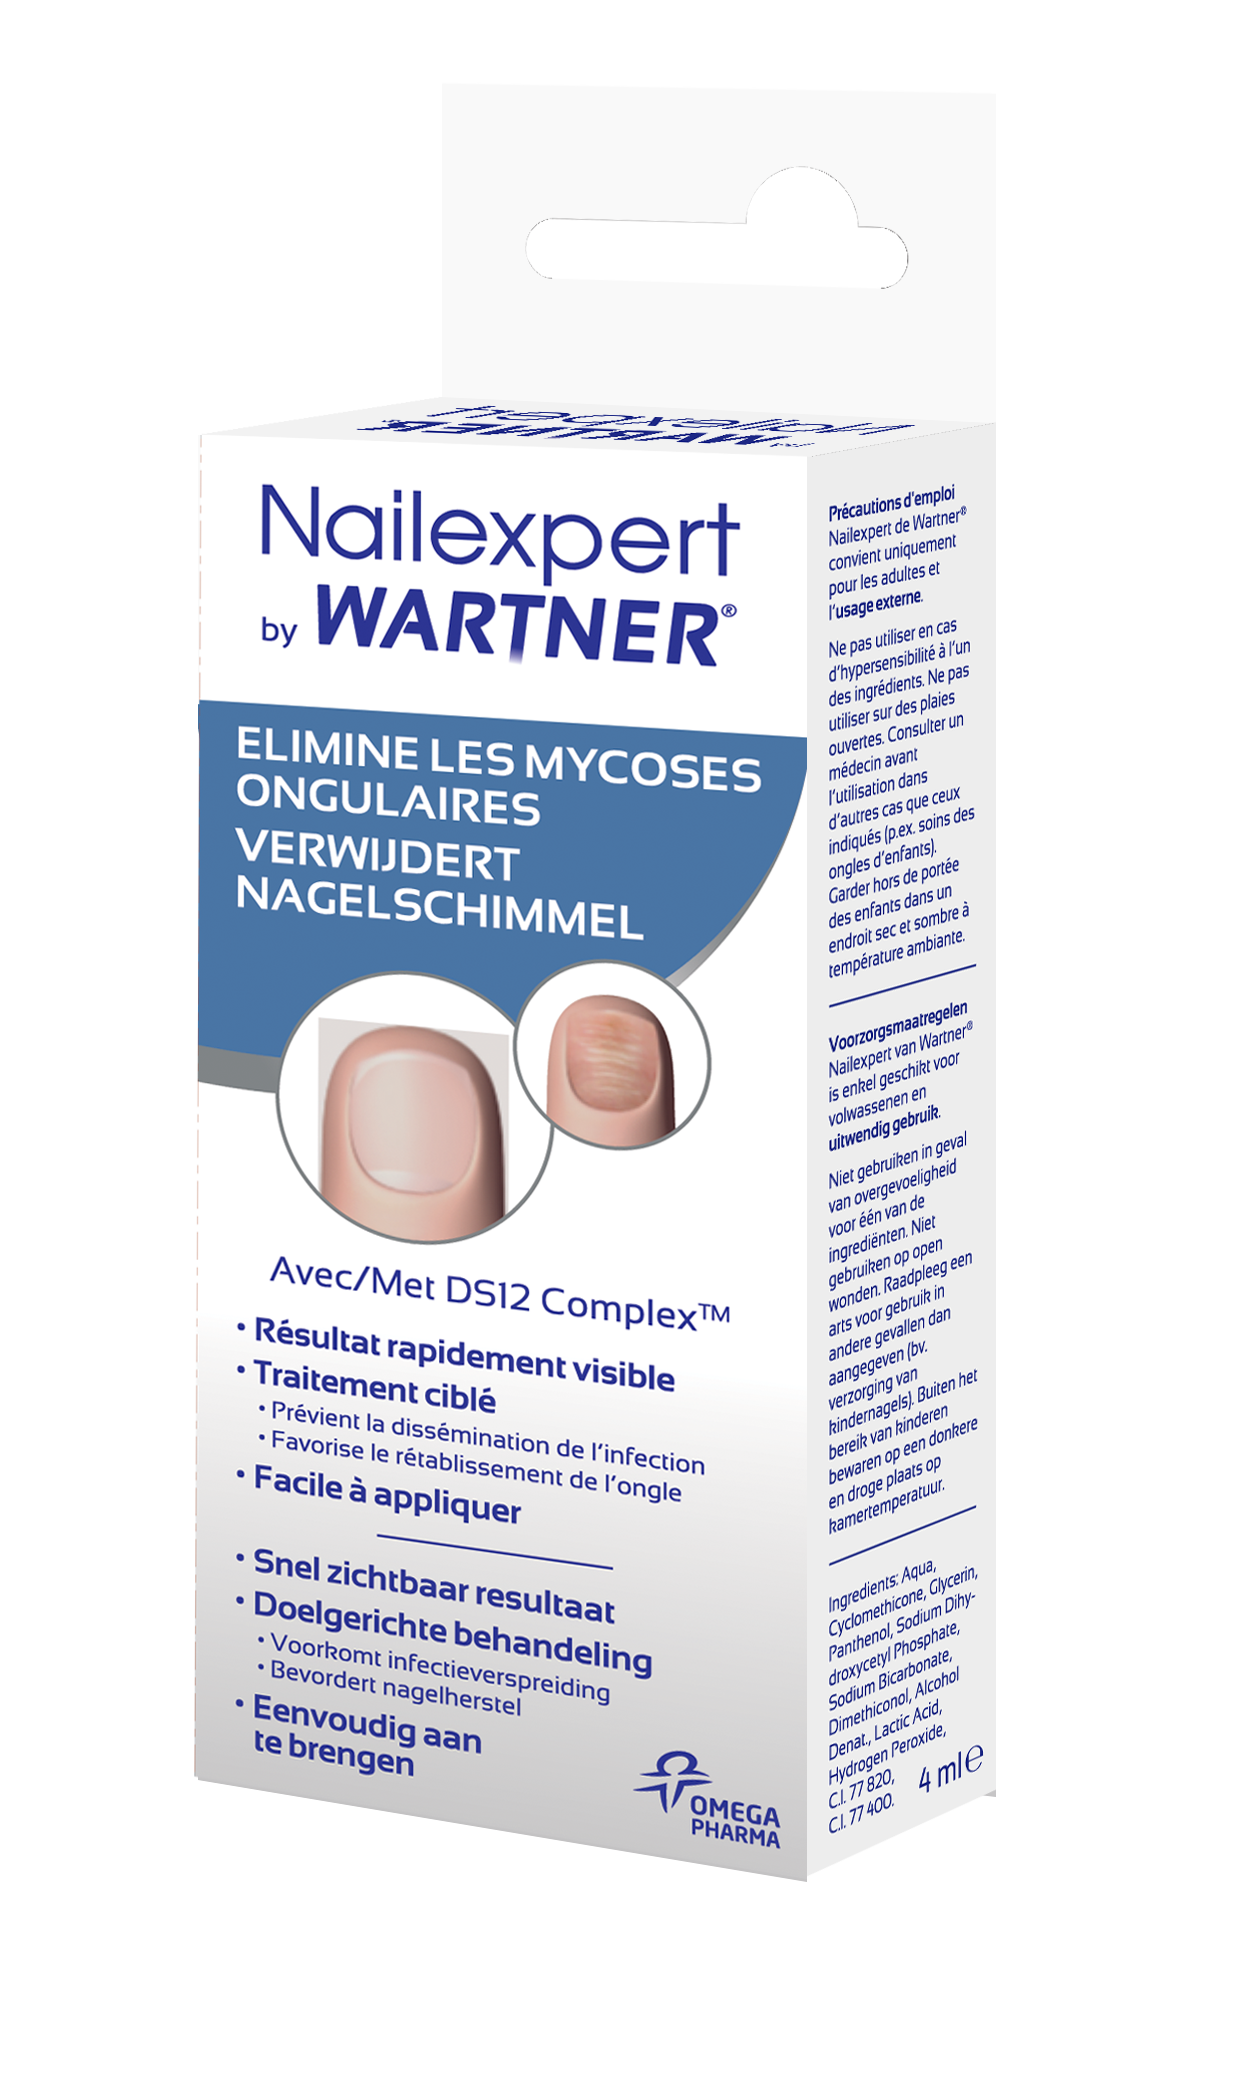 Wartner nailexpert для ногтей. Противогрибковое средство Wartner nailexpert. Wartner гель от грибка ногтей. Вартнер нейл эксперт лосьон 7 мл (Алвоген),.